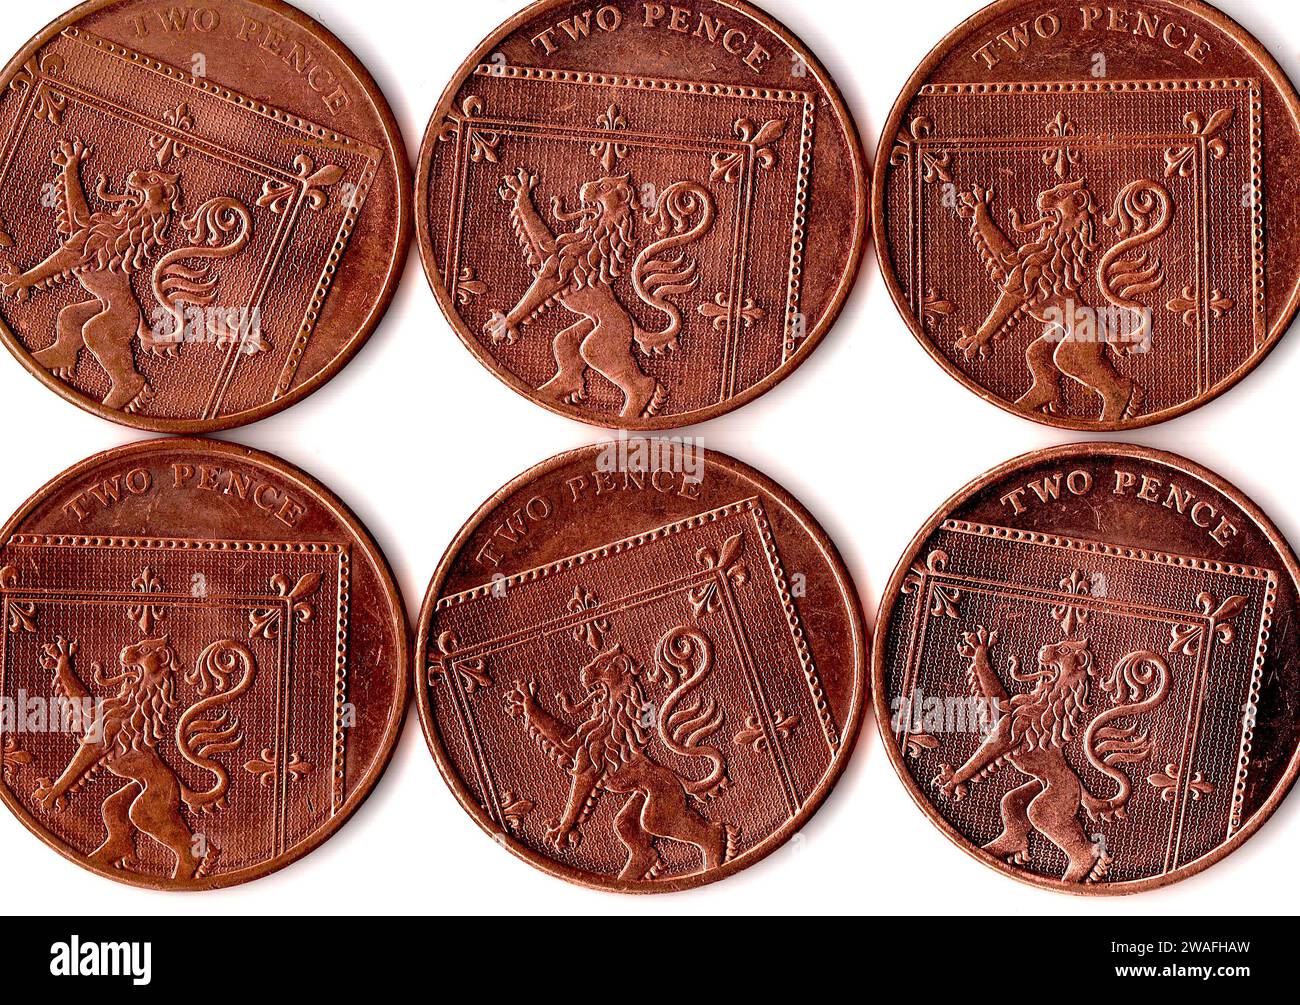 Deux pièces de pence du Royaume-Uni/Grande-Bretagne isolées sur fond blanc. Banque D'Images